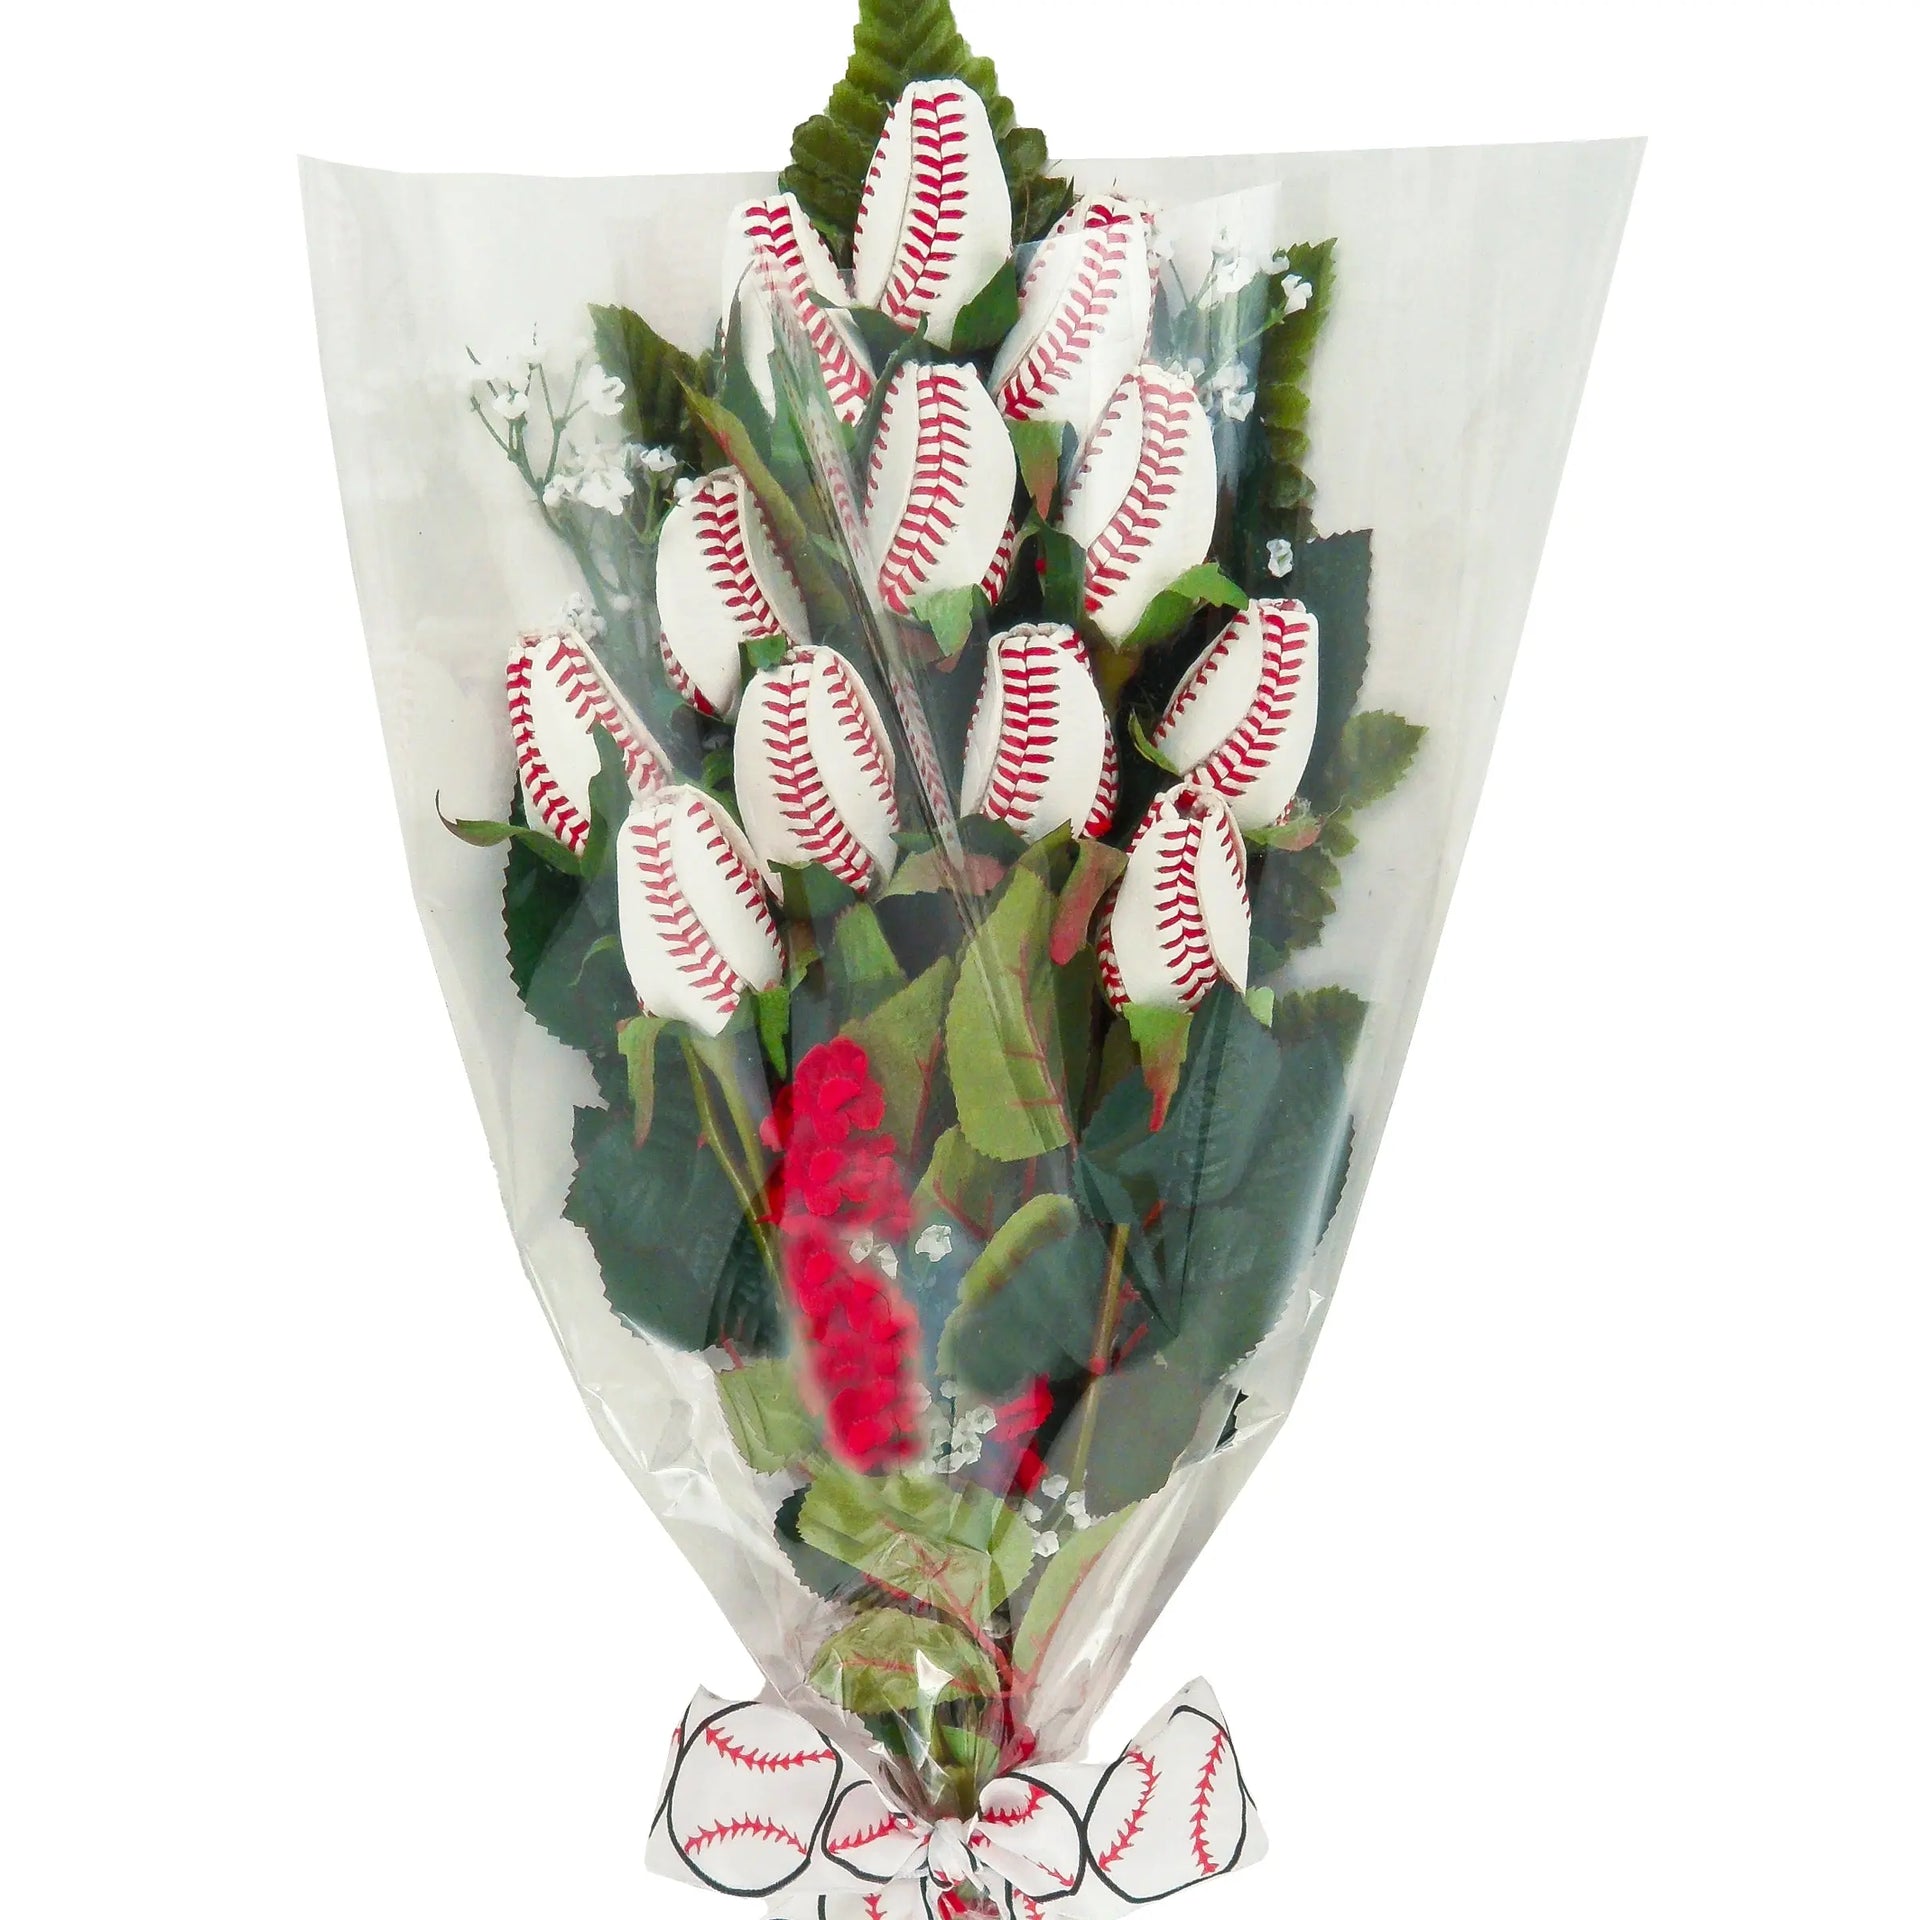 Baseball Rose Cellophane Gift Arrangement - Premium Baseball